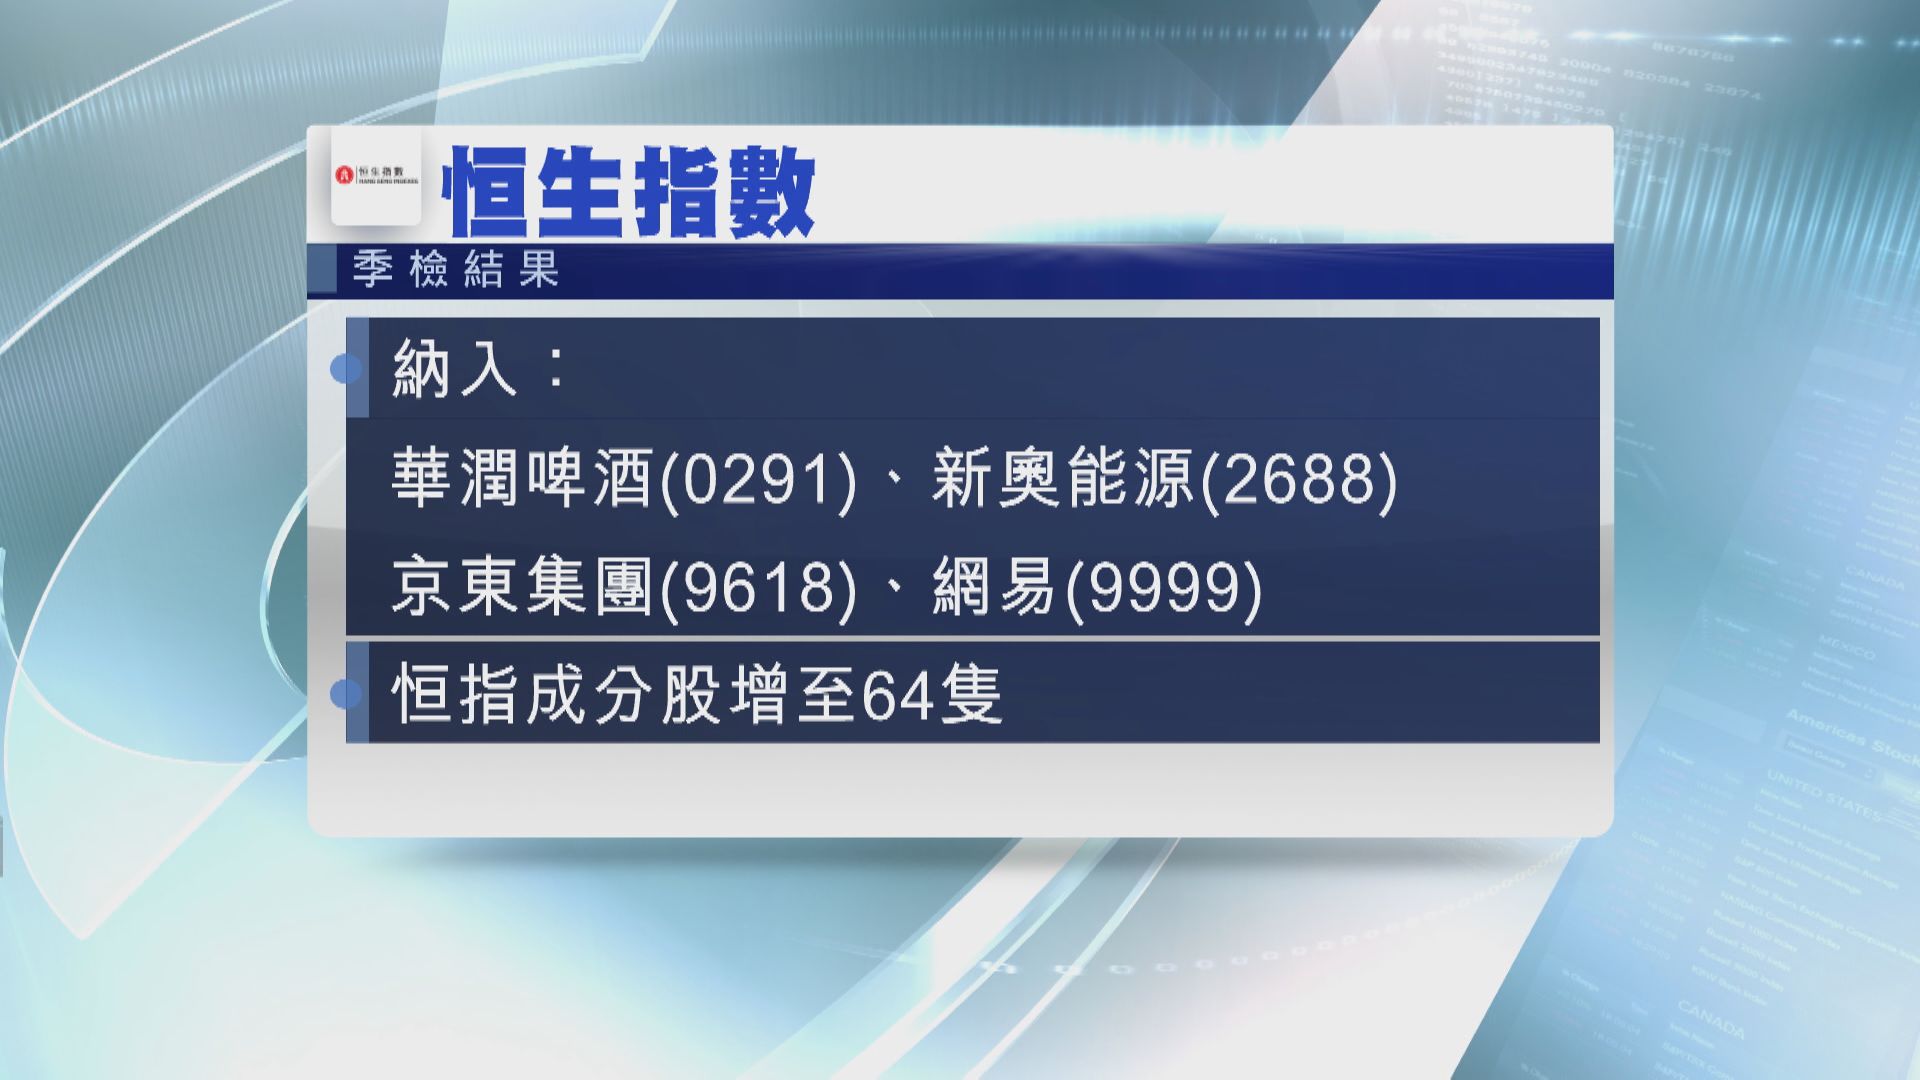 【恒指季檢】京東、網易、潤啤、新奧「染藍」 成分股增至64隻 恒大踢出國指